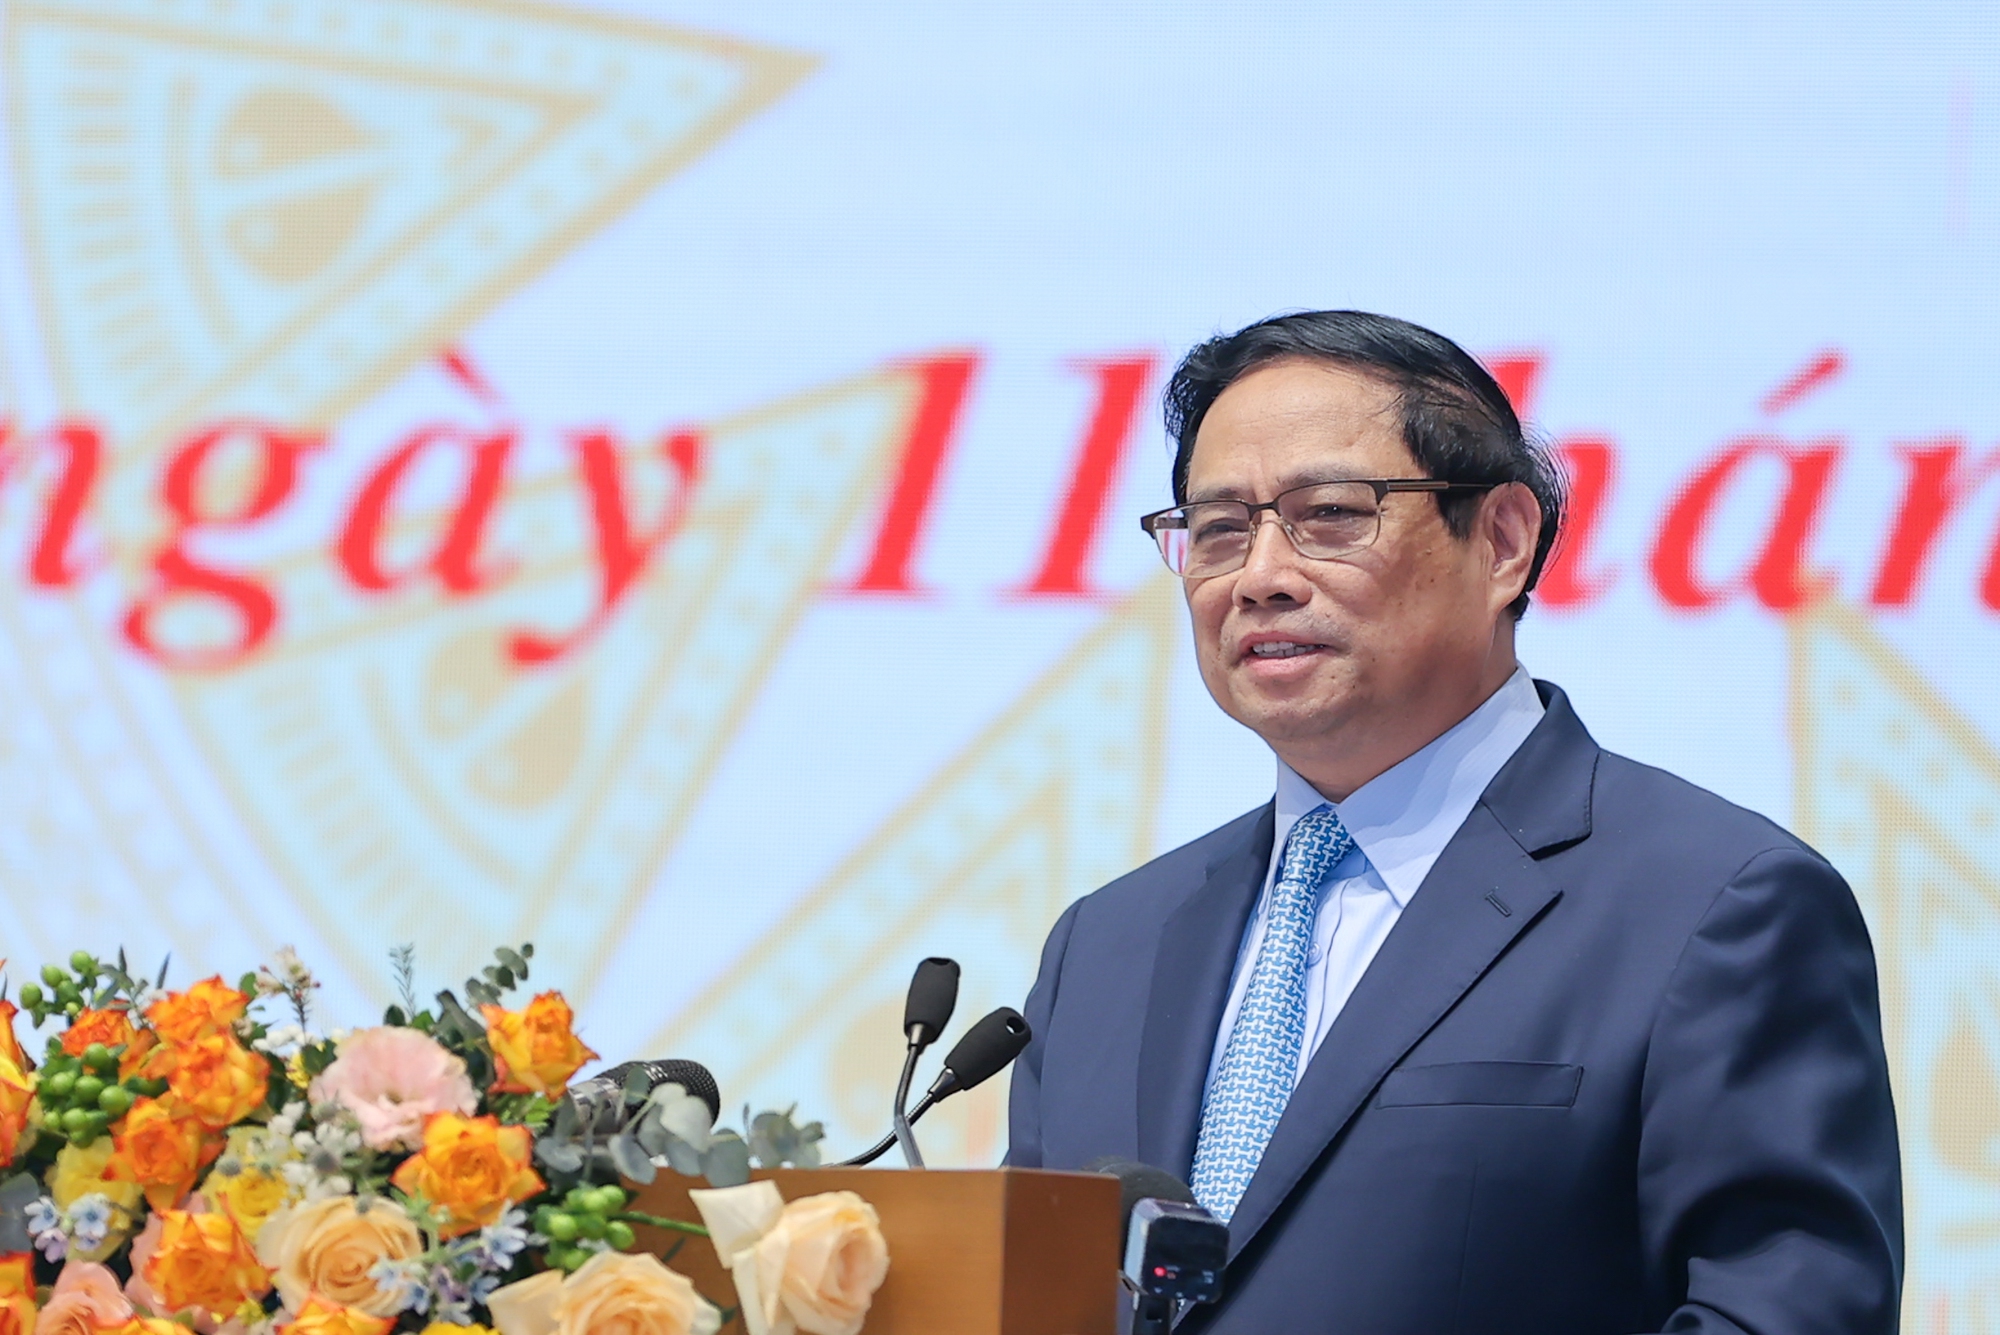 Thủ tướng Phạm Minh Chính phát biểu kết luận buổi gặp mặt đại diện giới doanh nhân Việt Nam - Ảnh: VGP/Nhật Bắc